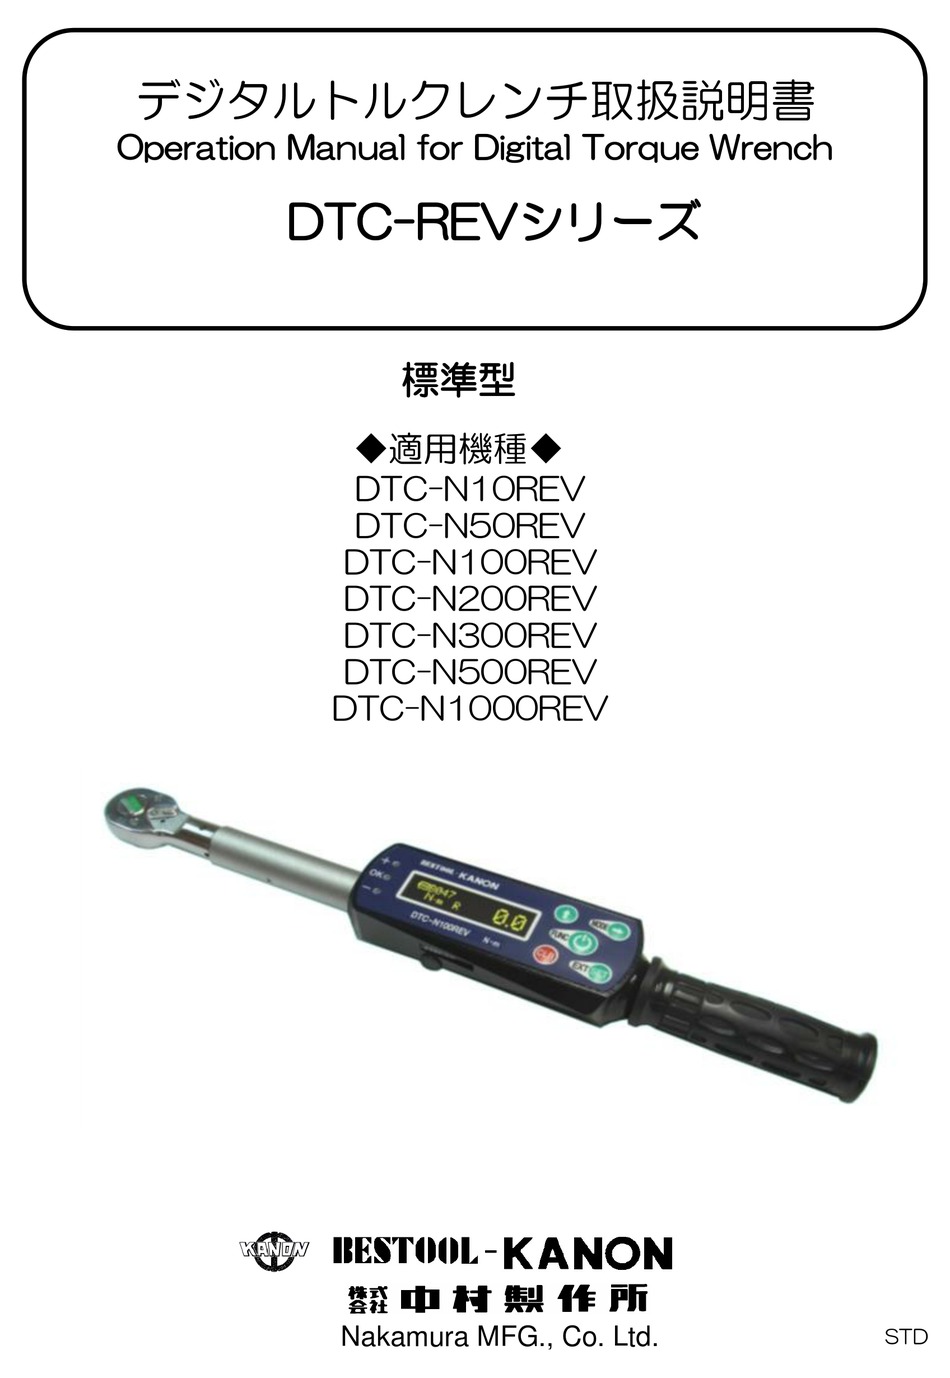 カノン デジタルトルクレンチ DTC-N300REV 通販